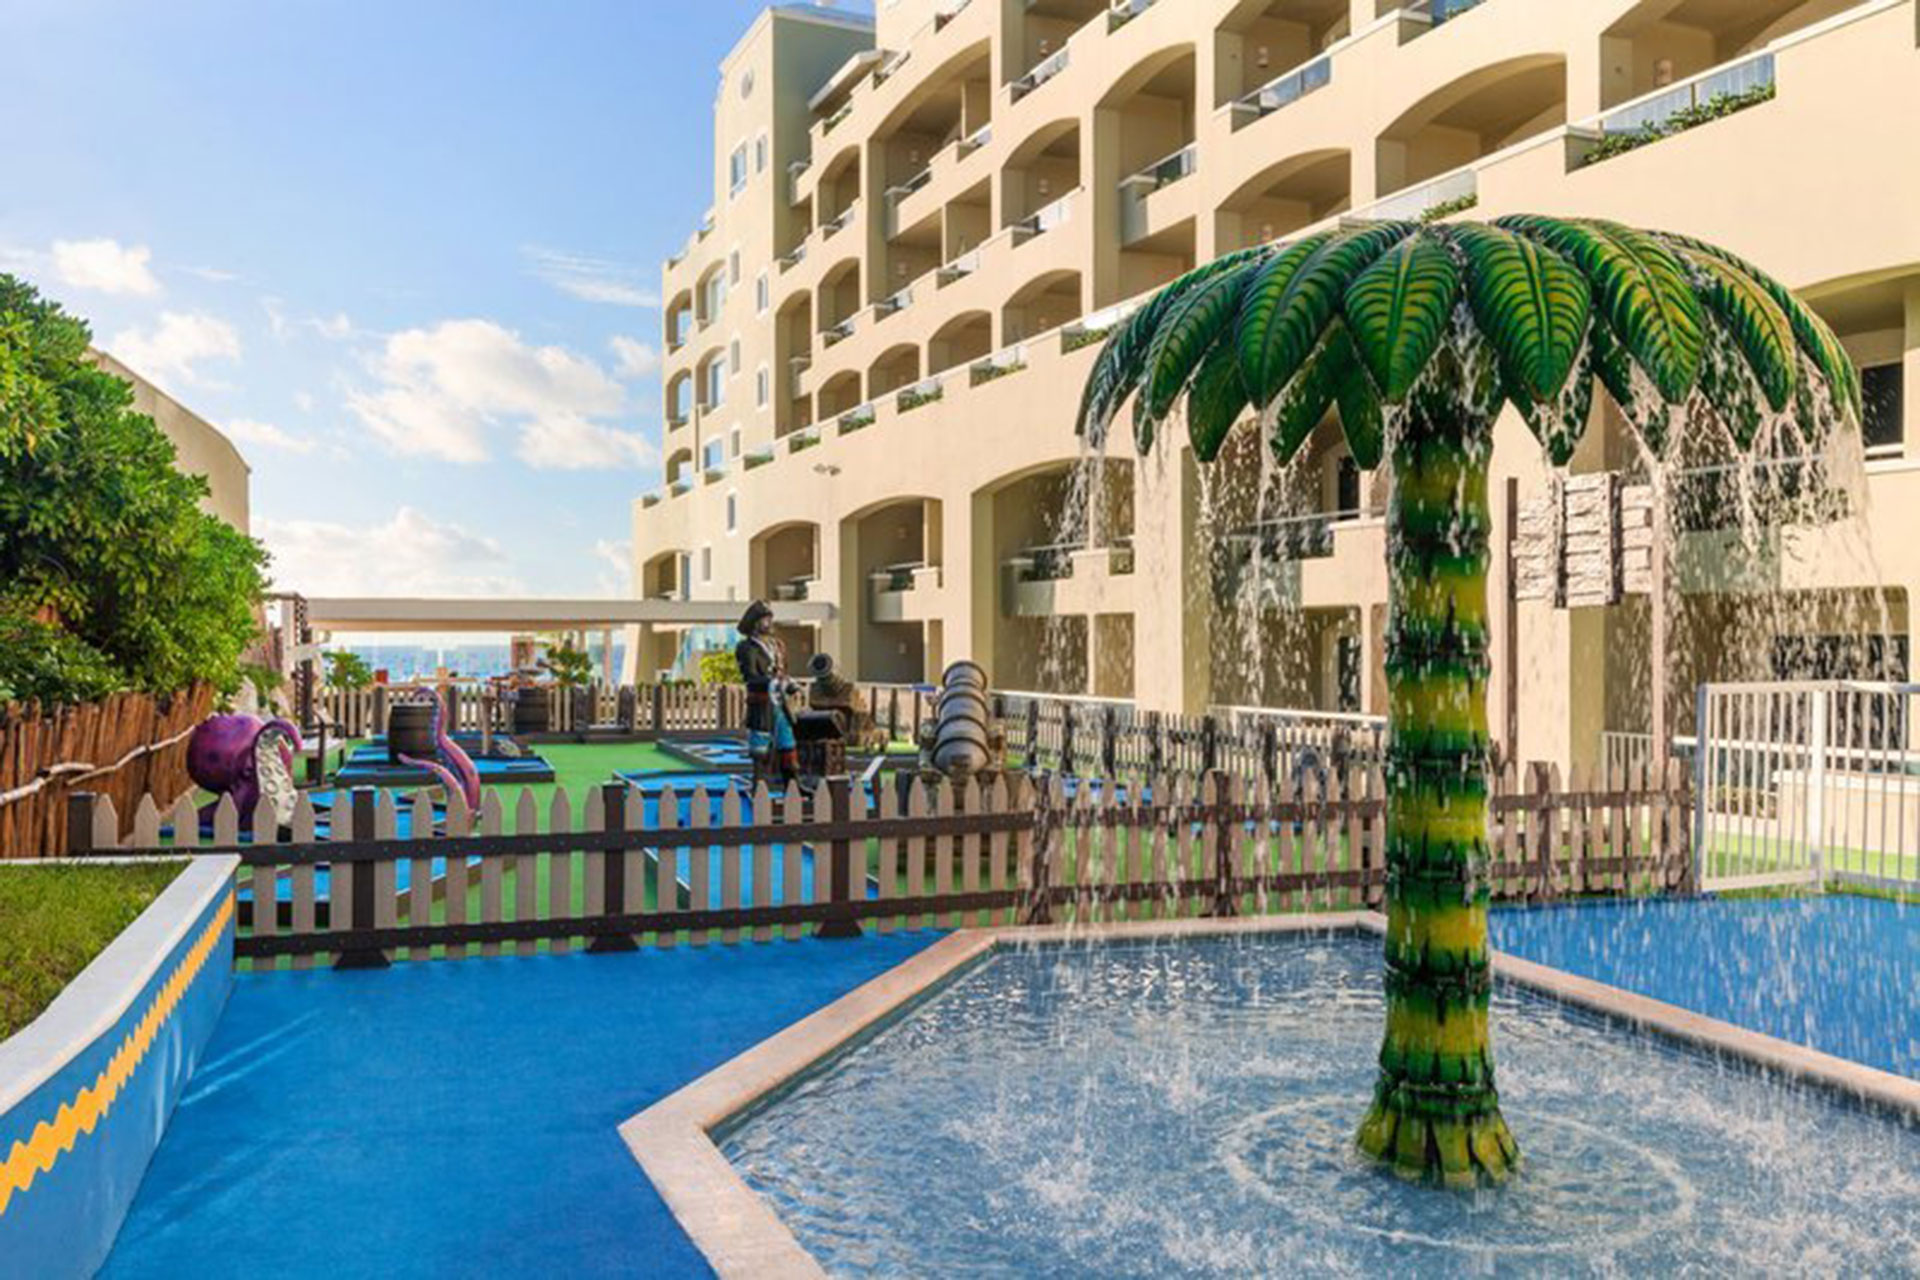 Pools at Panama Jack Resorts Cancun; Courtesy of Panama Jack Resorts Cancun